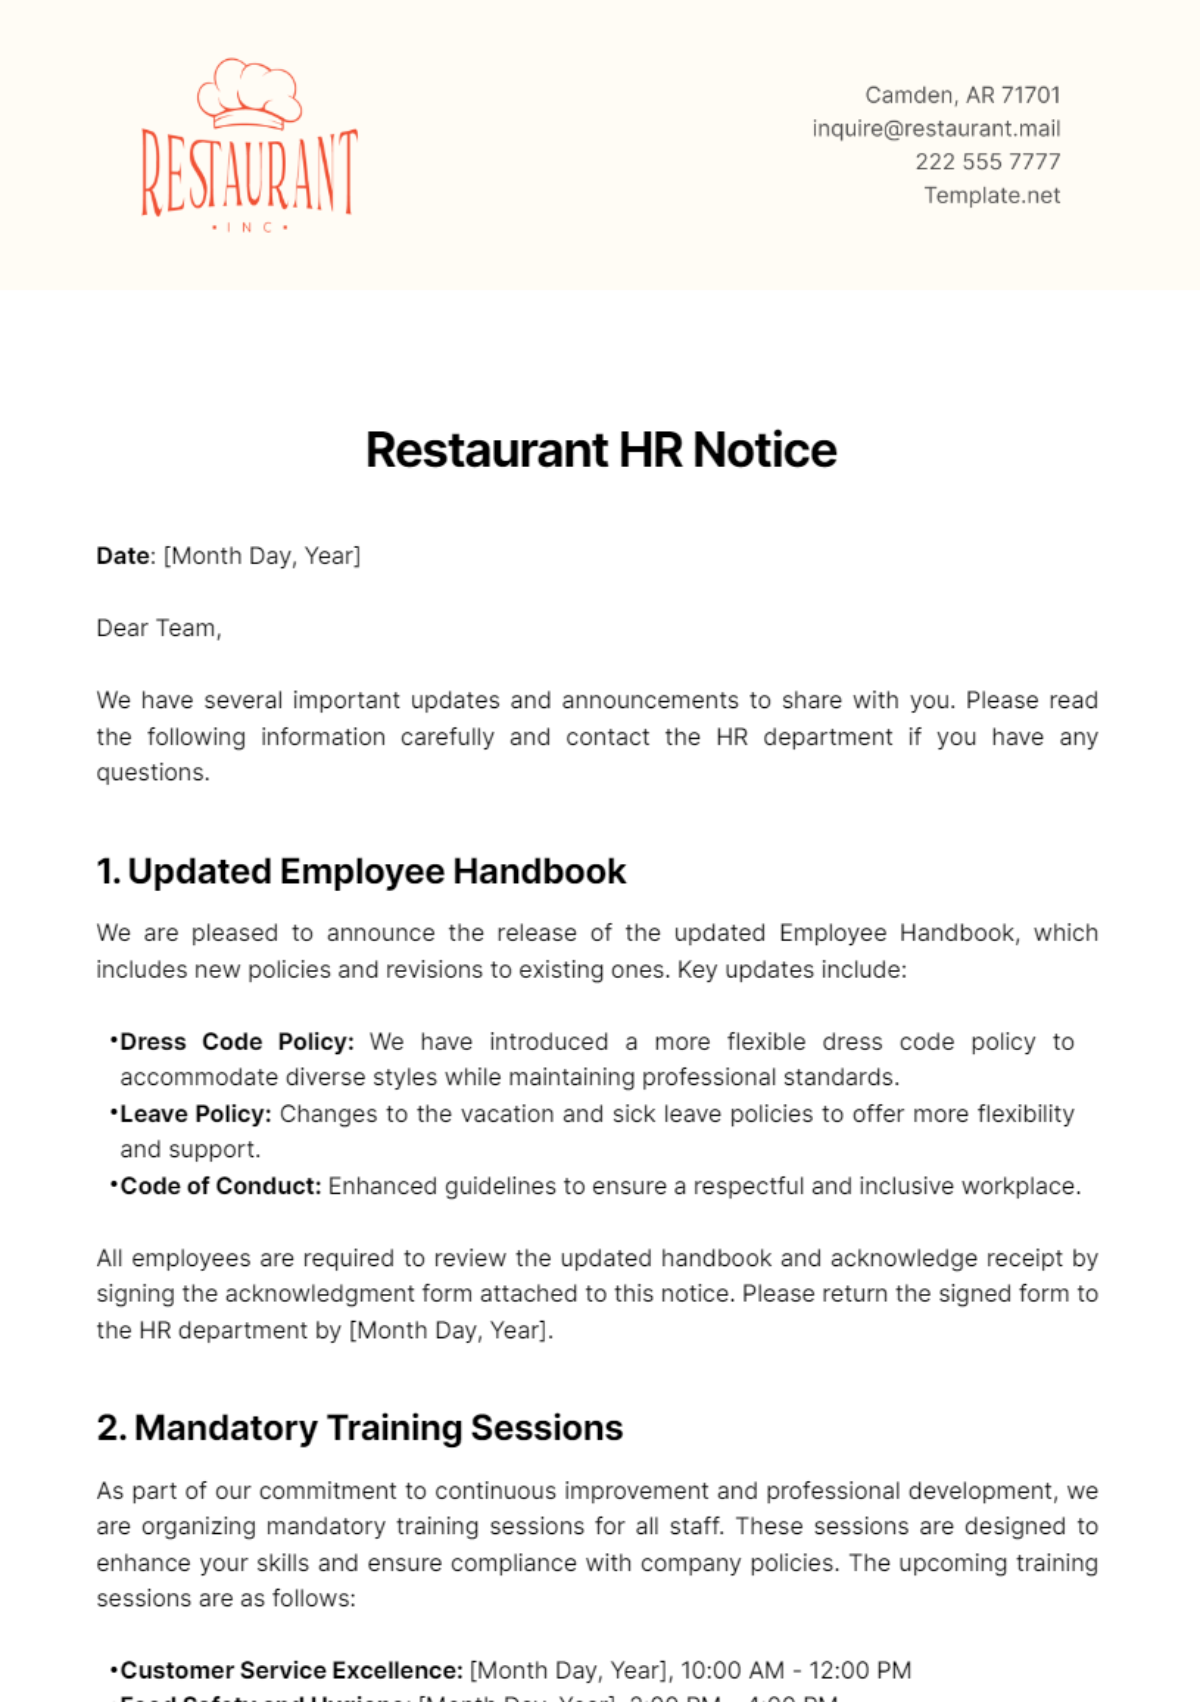 Free Restaurant HR Notice Template